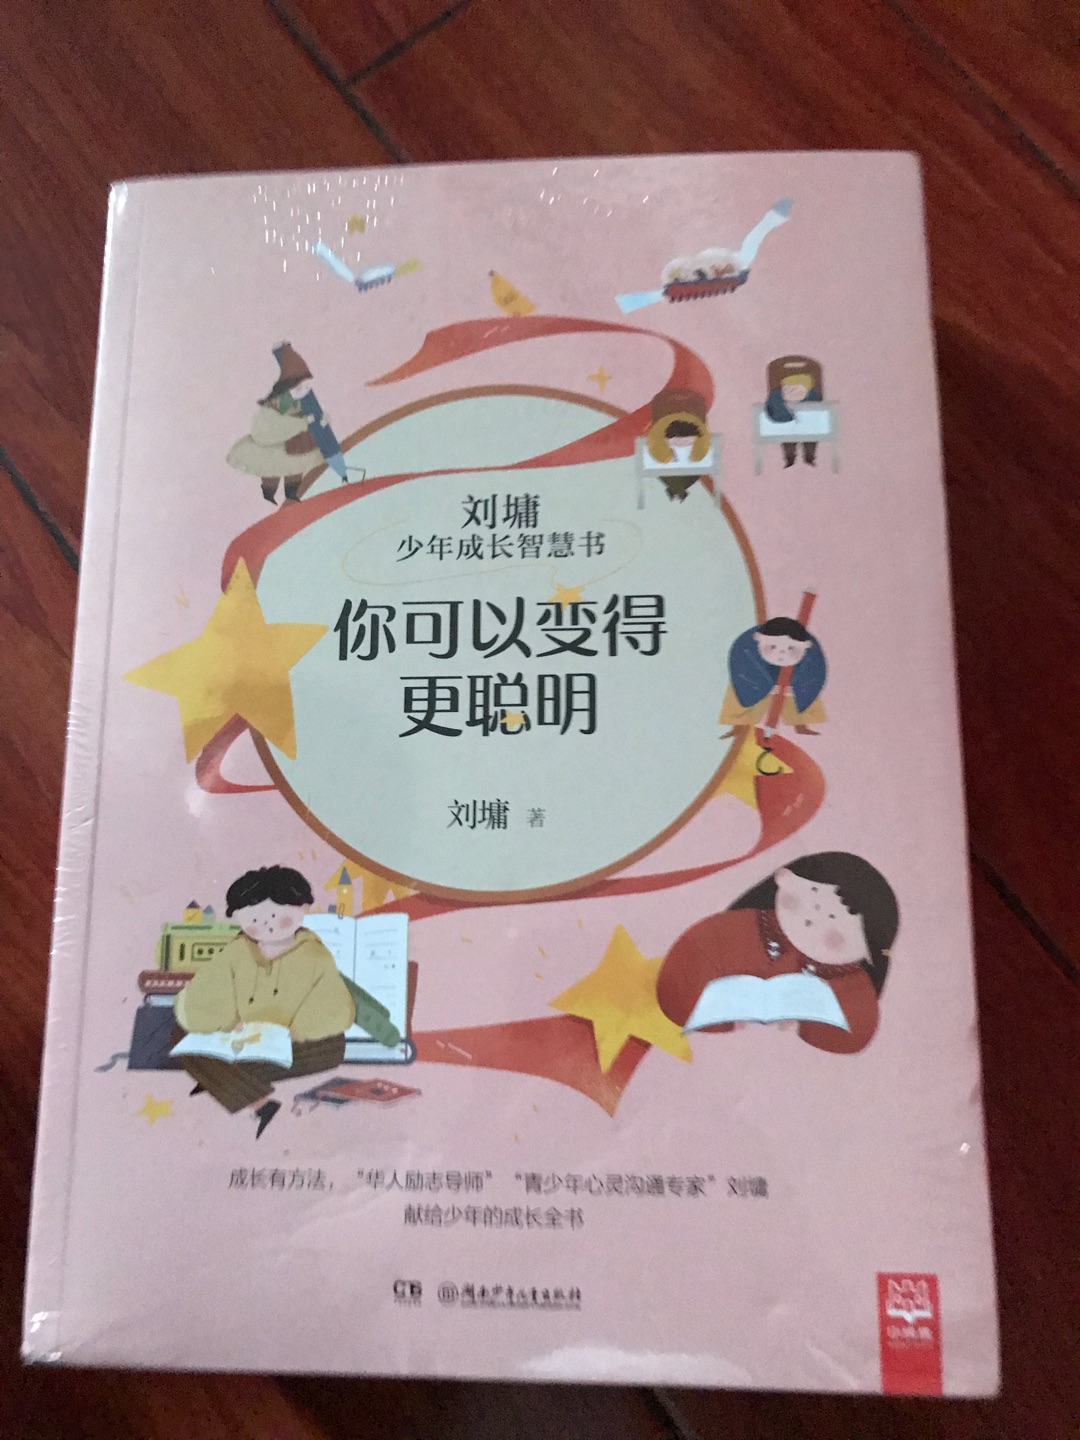 从小就是刘墉的忠实读者，现在买一套给孩子看，希望这些文字文章对他有启发